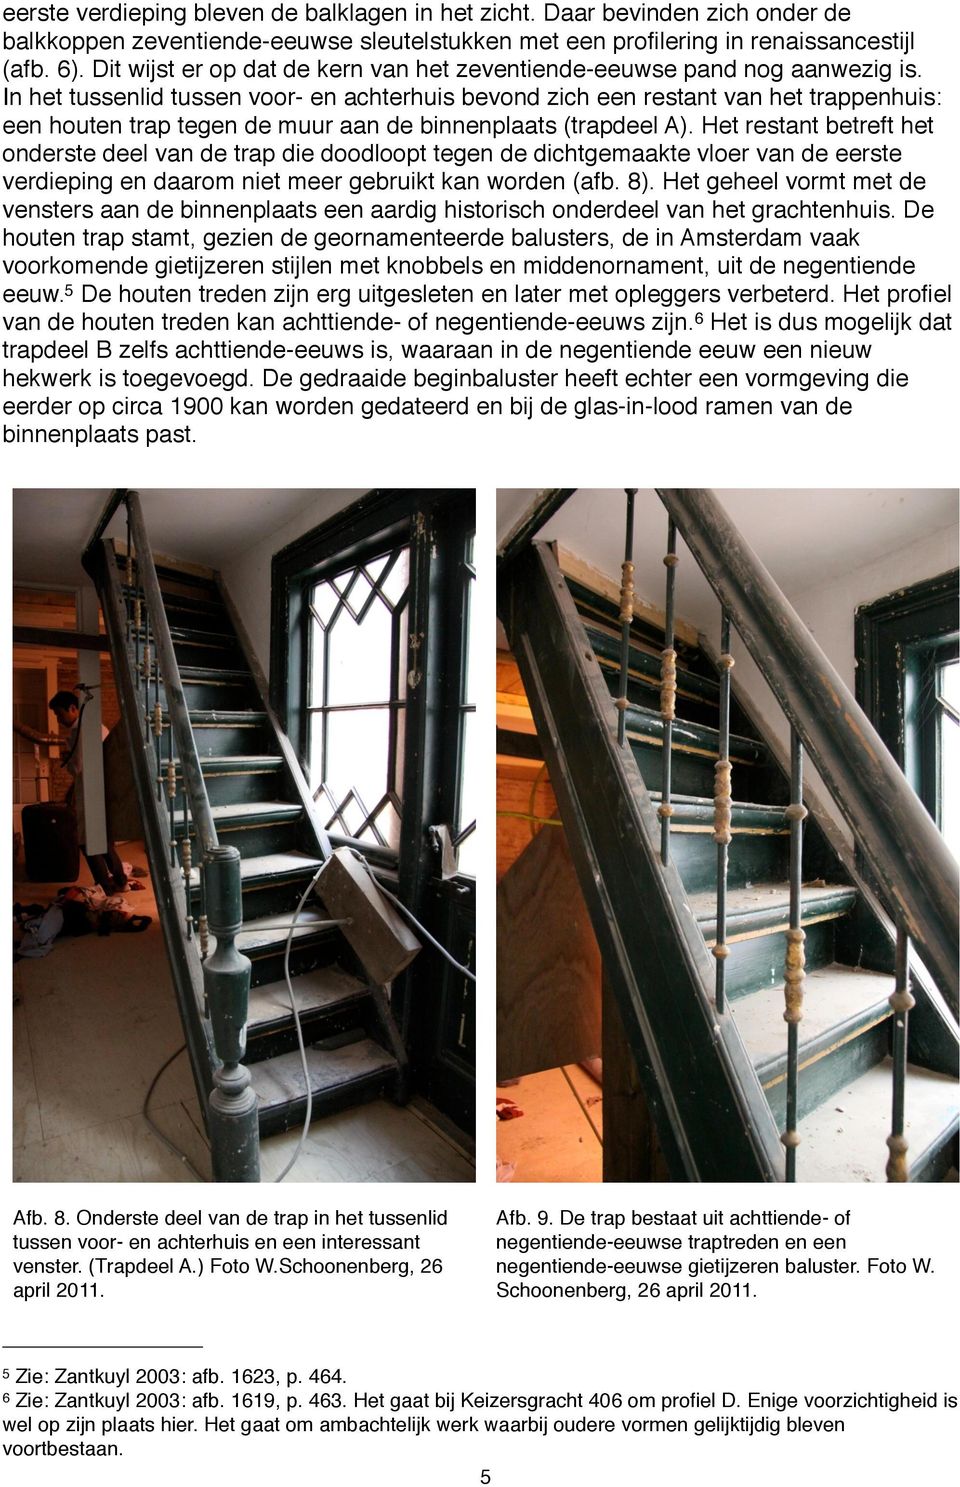 In het tussenlid tussen voor- en achterhuis bevond zich een restant van het trappenhuis: een houten trap tegen de muur aan de binnenplaats (trapdeel A).